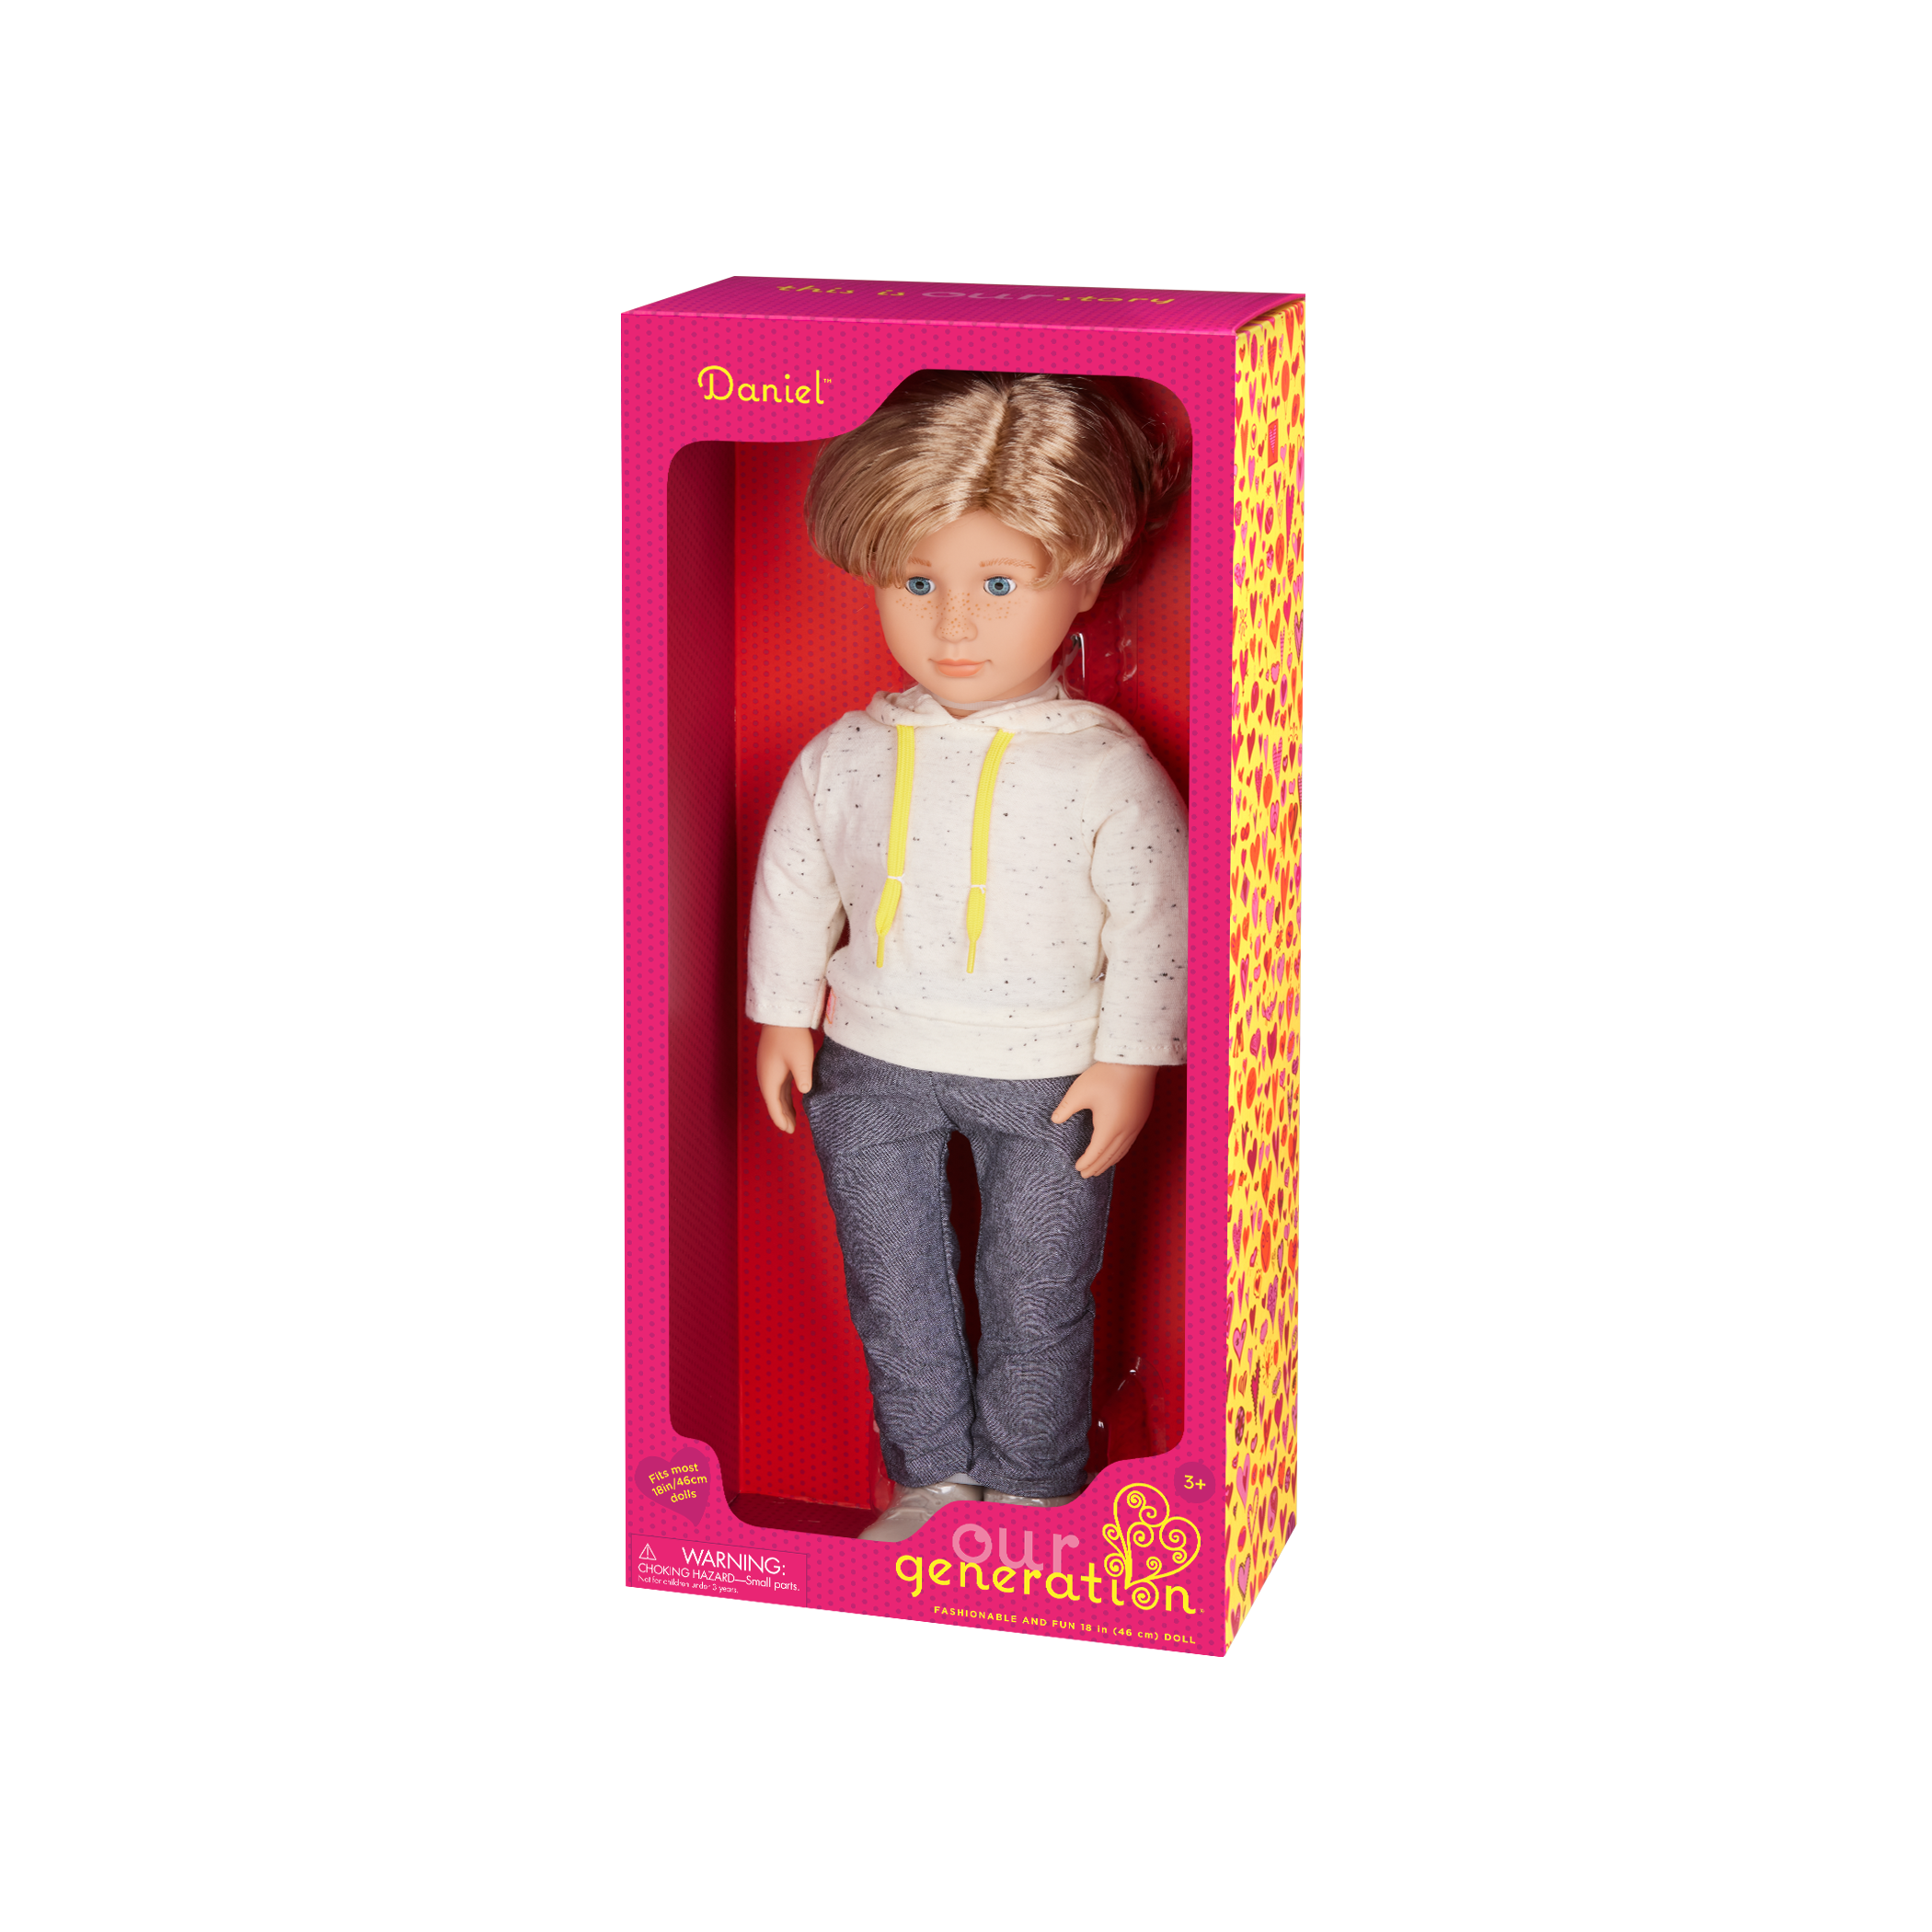 Our Generation 18-inch Boy Doll Daniel